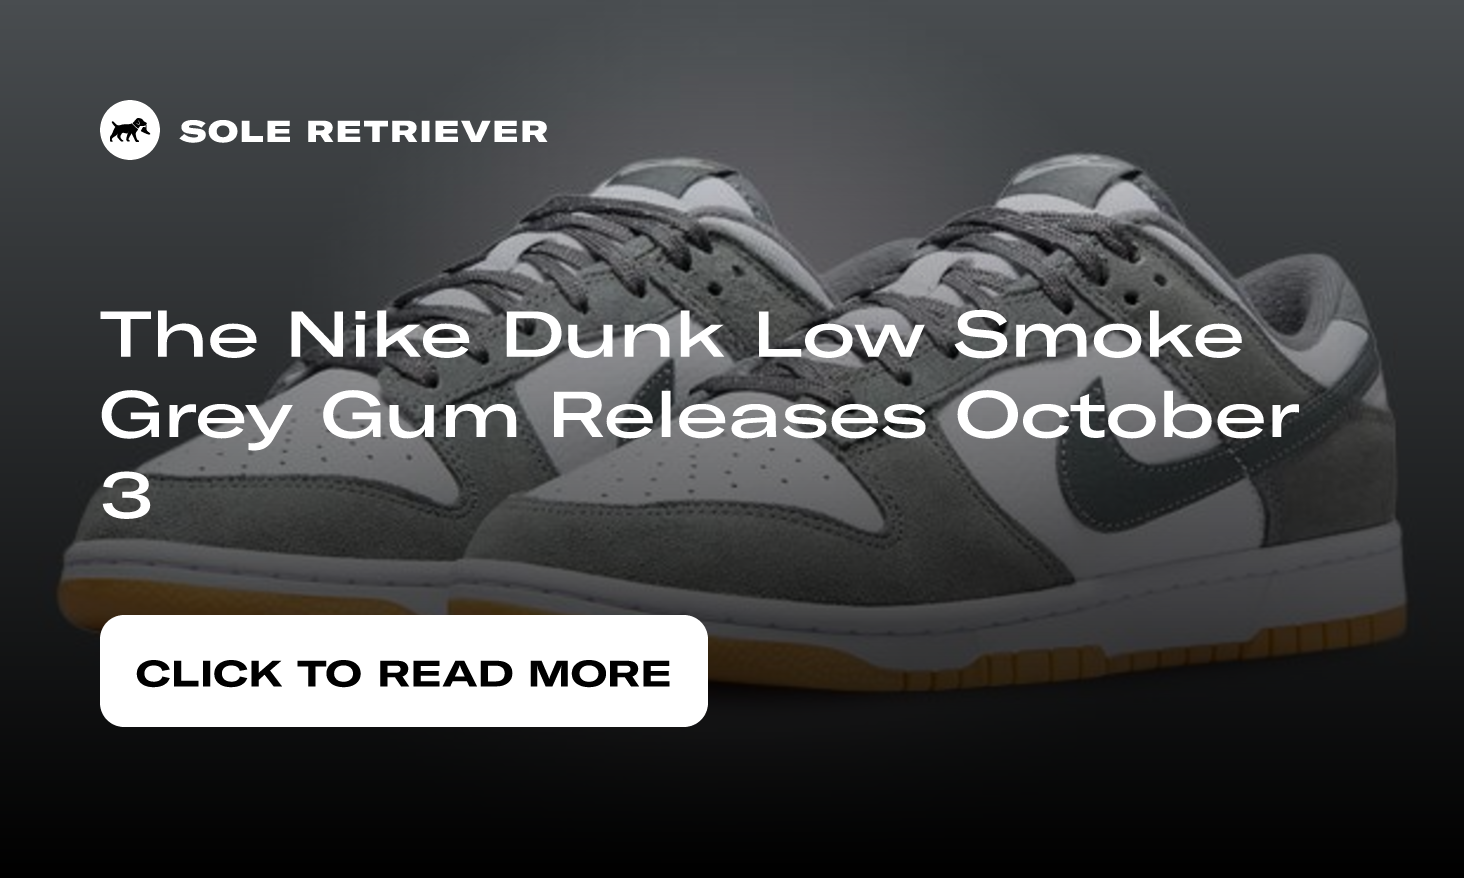 Buy Dunk Low 'Smoke Grey Gum' - FV0389 100